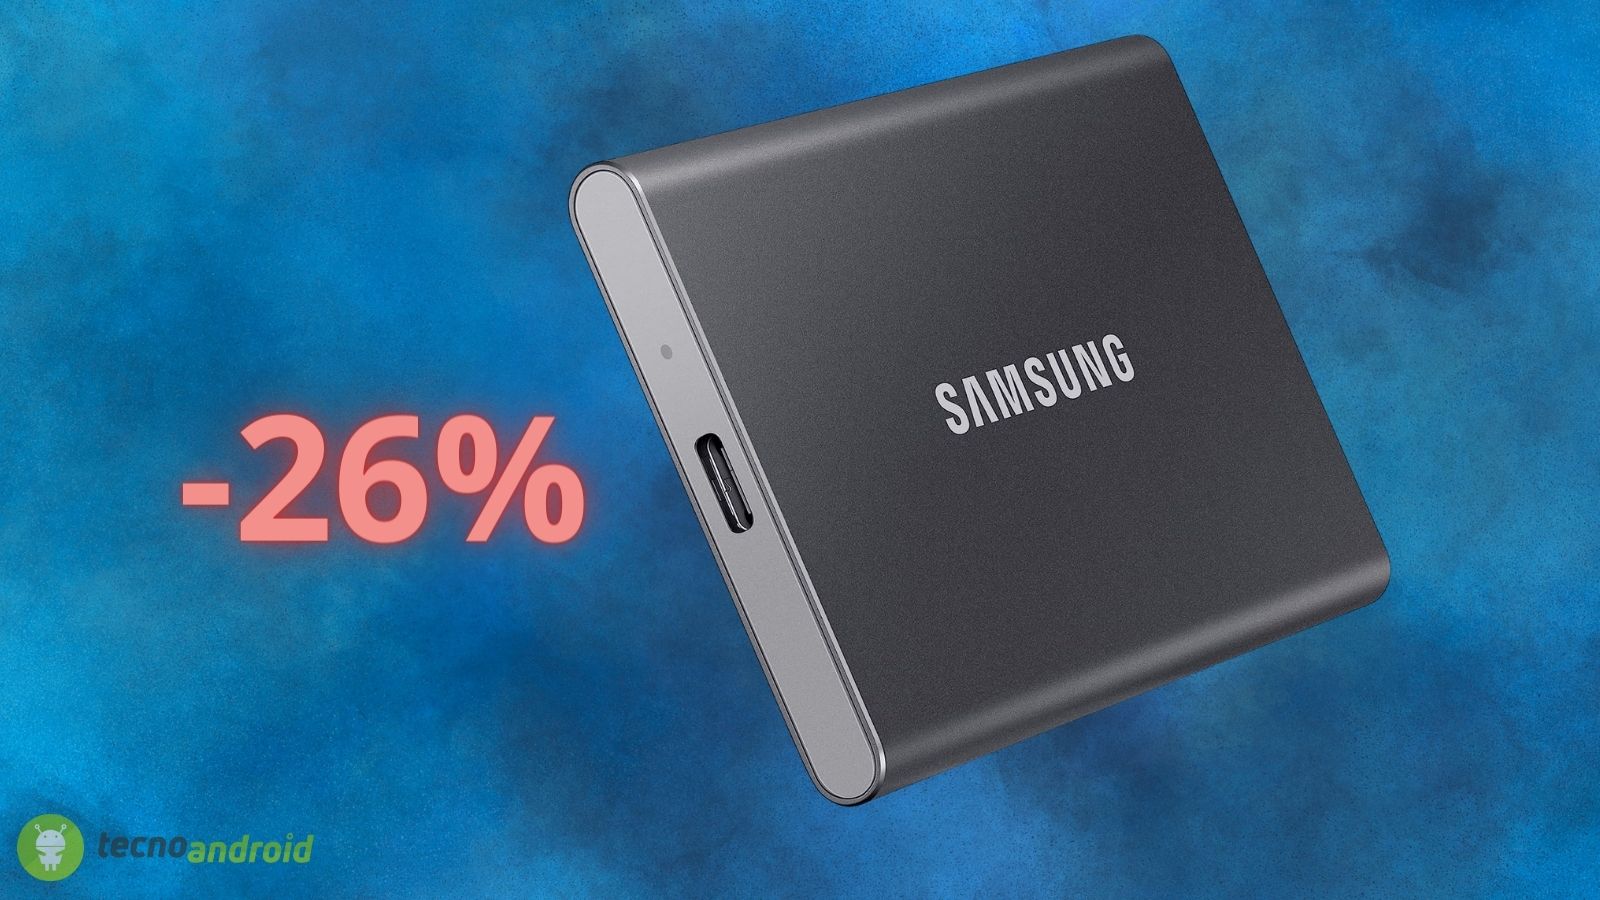 SSD Portatile a prezzo STRACCIATO su Amazon: Samsung al 26%